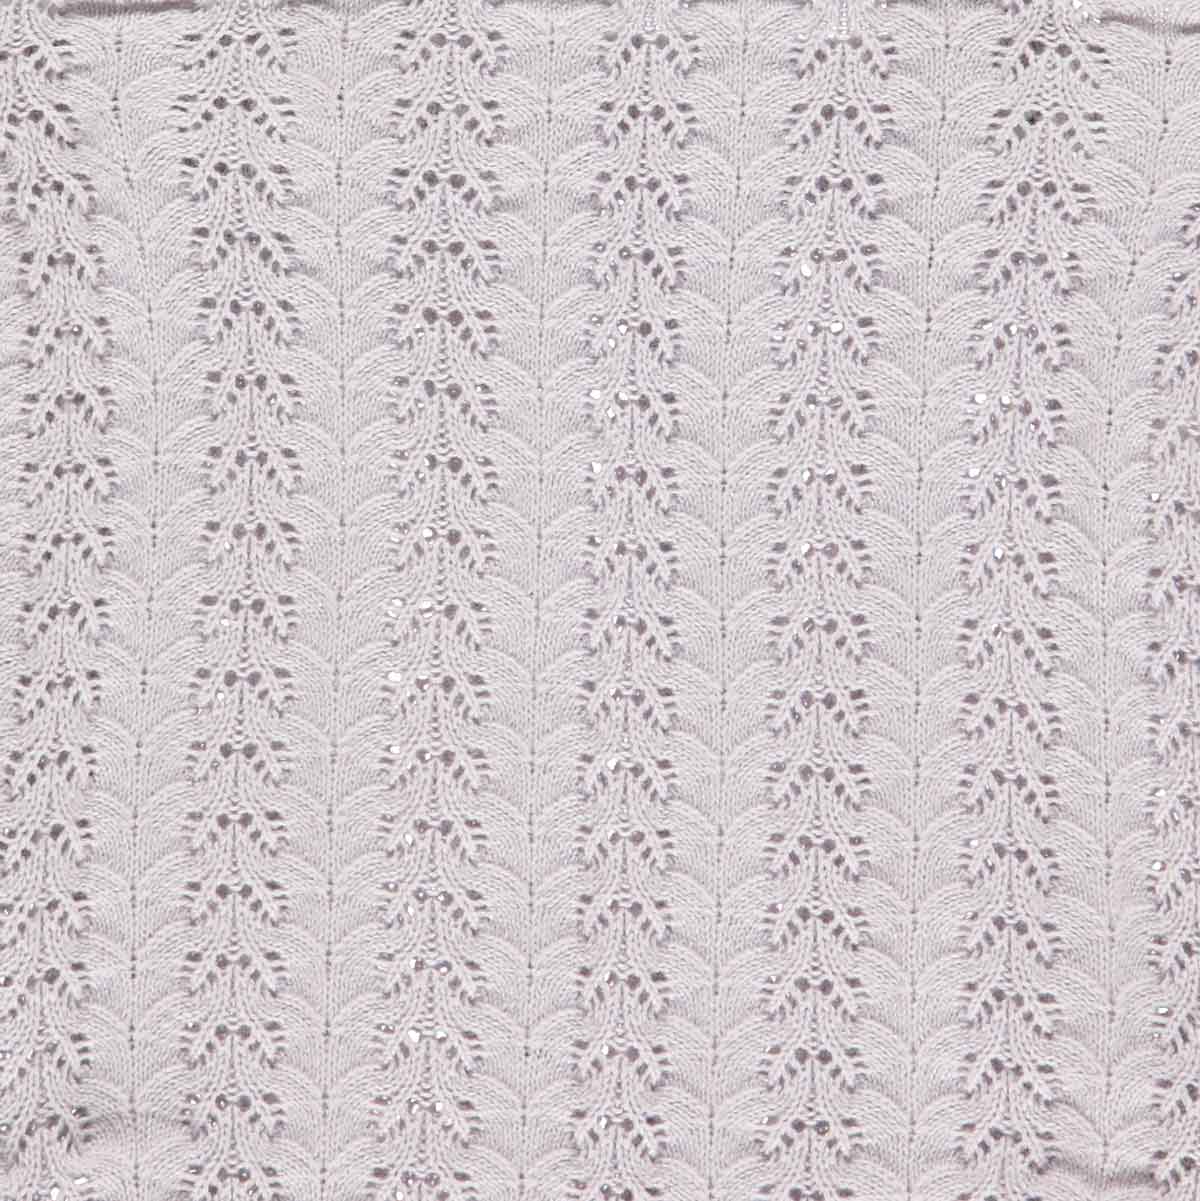 MAMA.LICIOUS müsli Knit romper -Soft Lilac - 1583044200